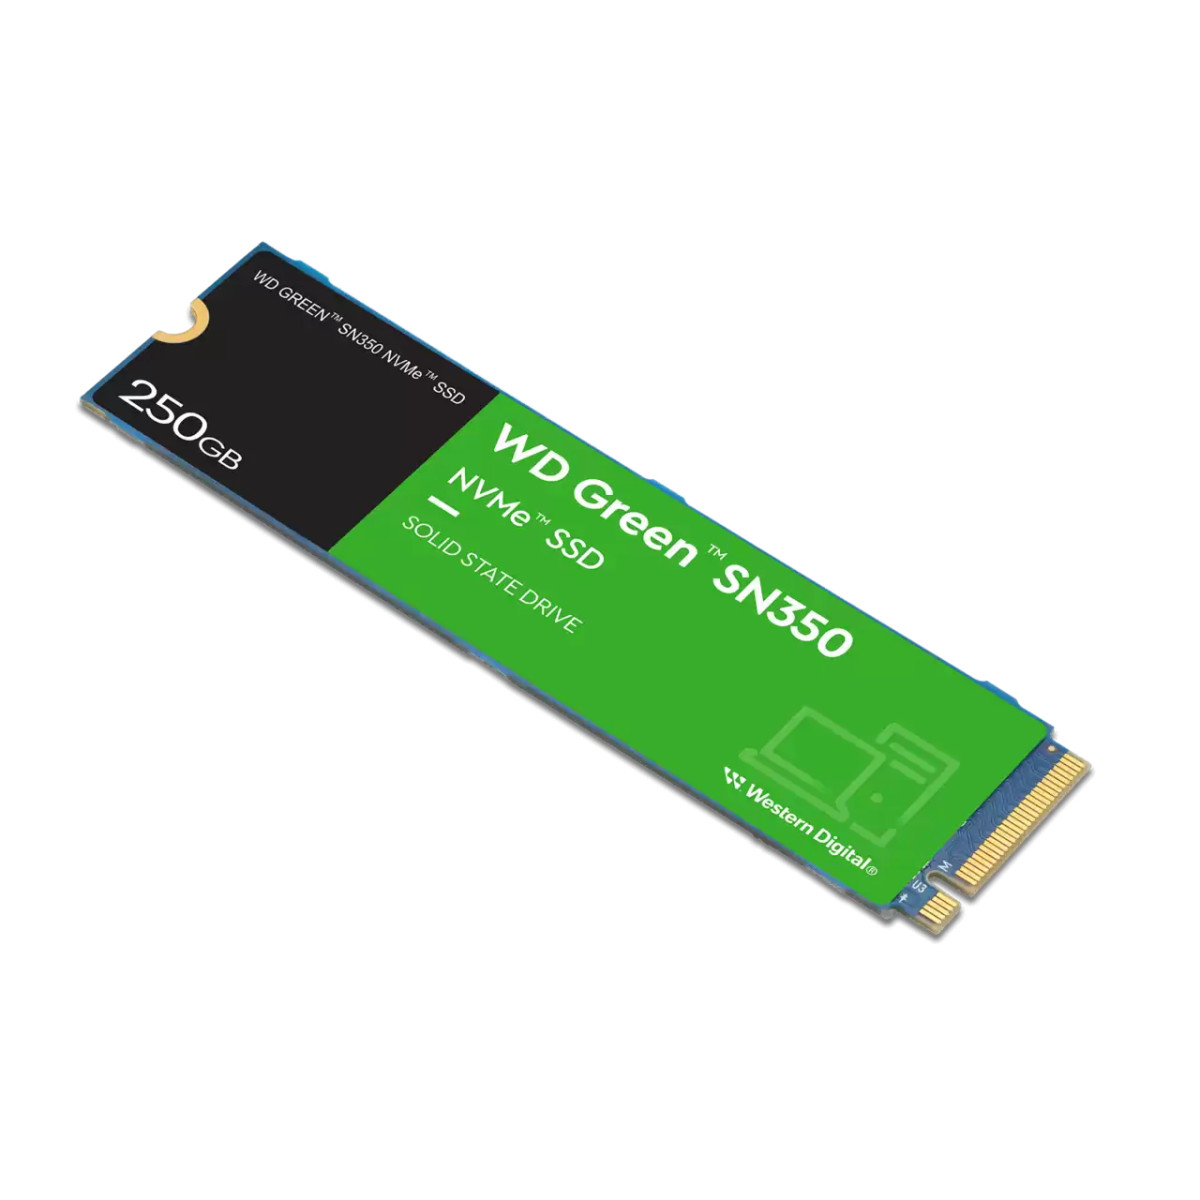 SSD Int 250GB Green PCIE G3 M.2